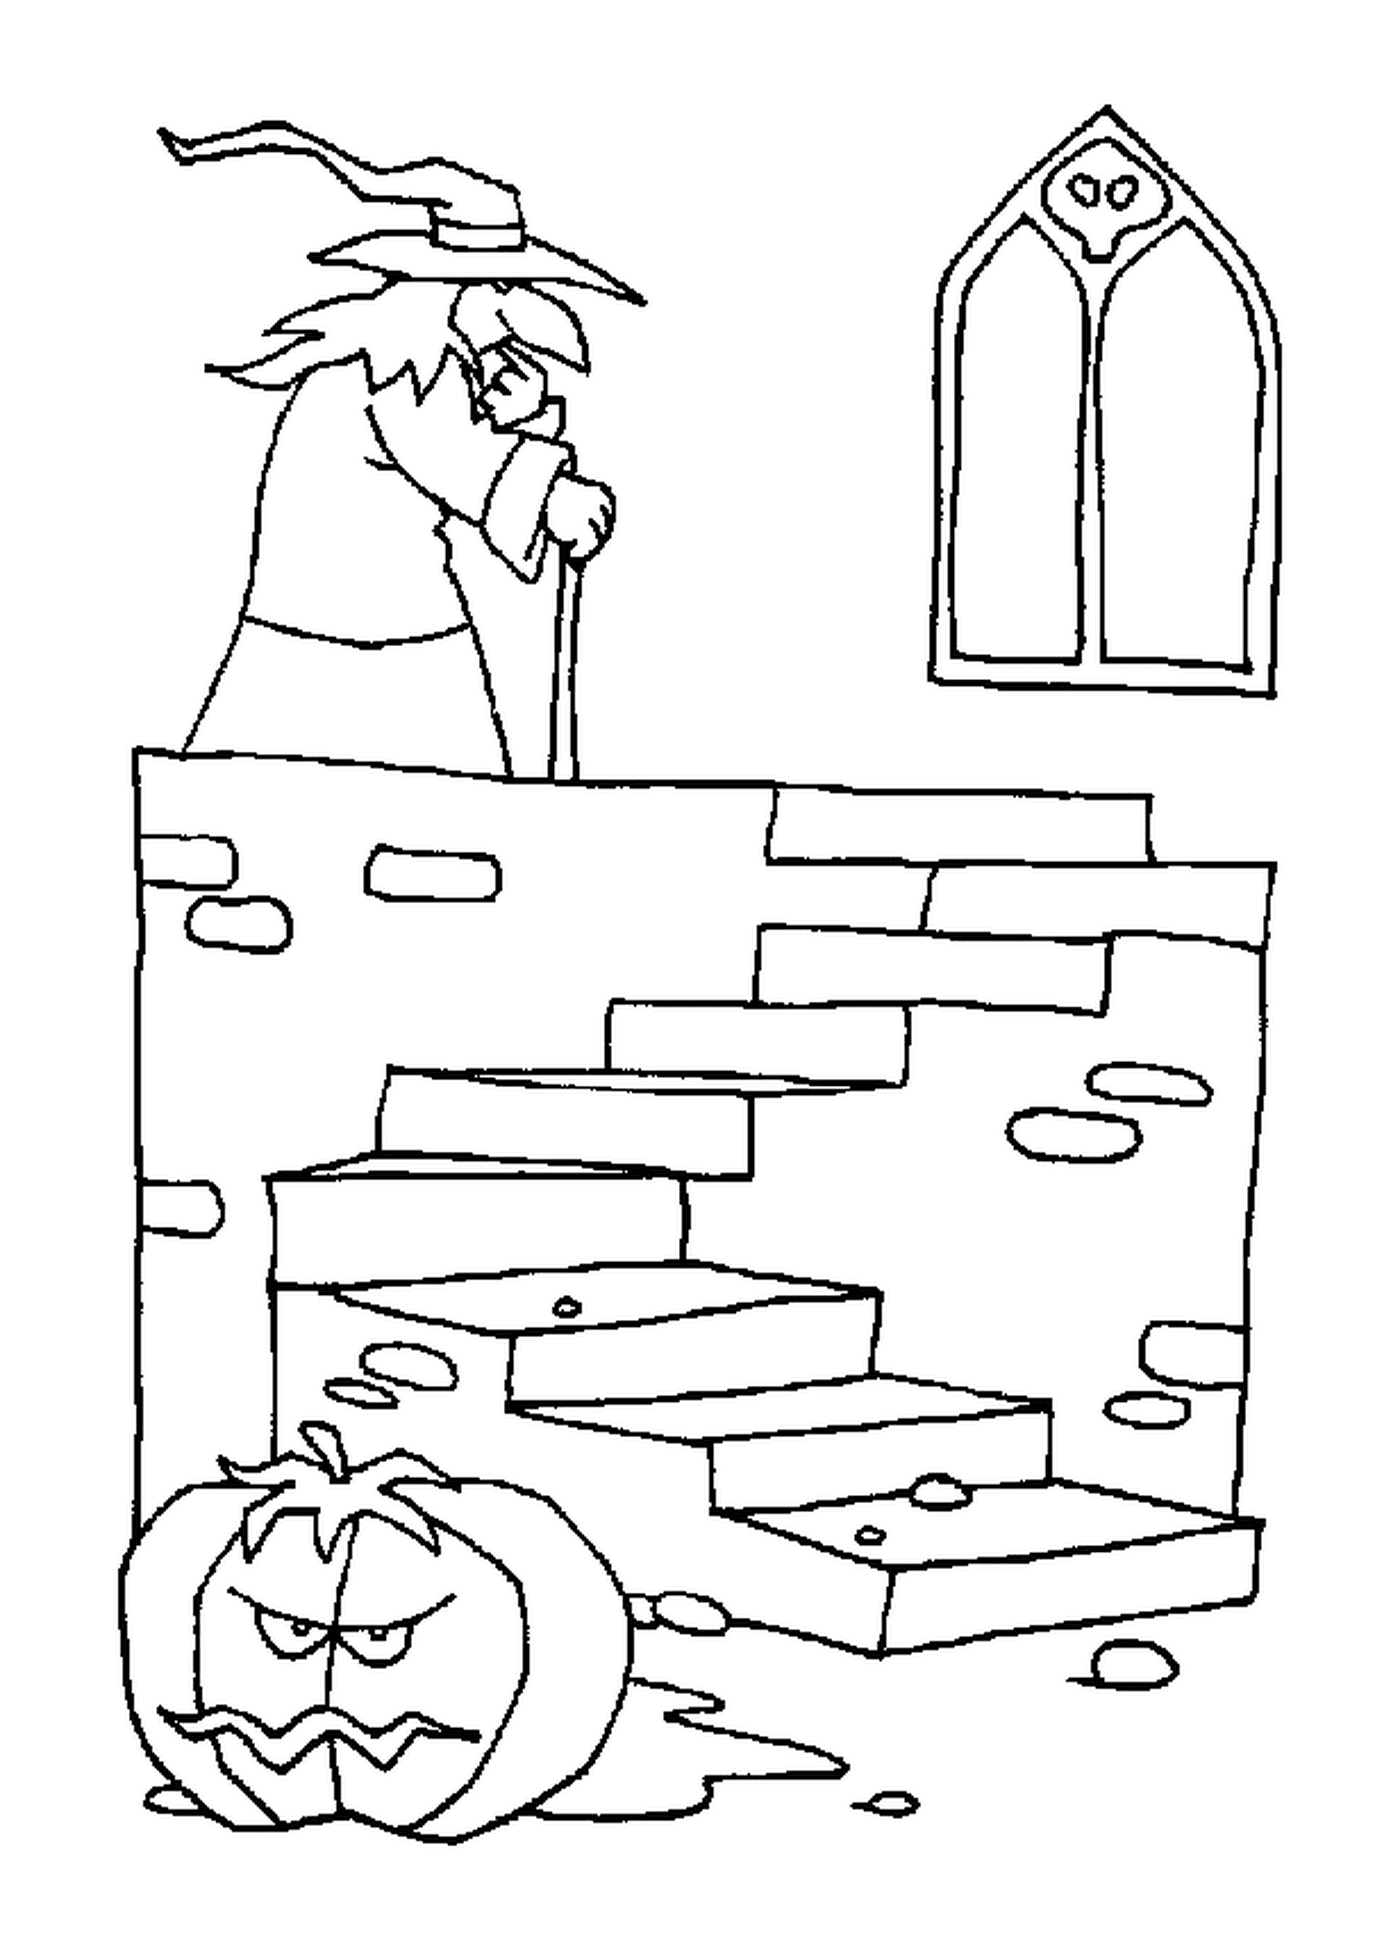 dessin d une sorciere a la recherche de sa citrouille d halloween dans son manoir